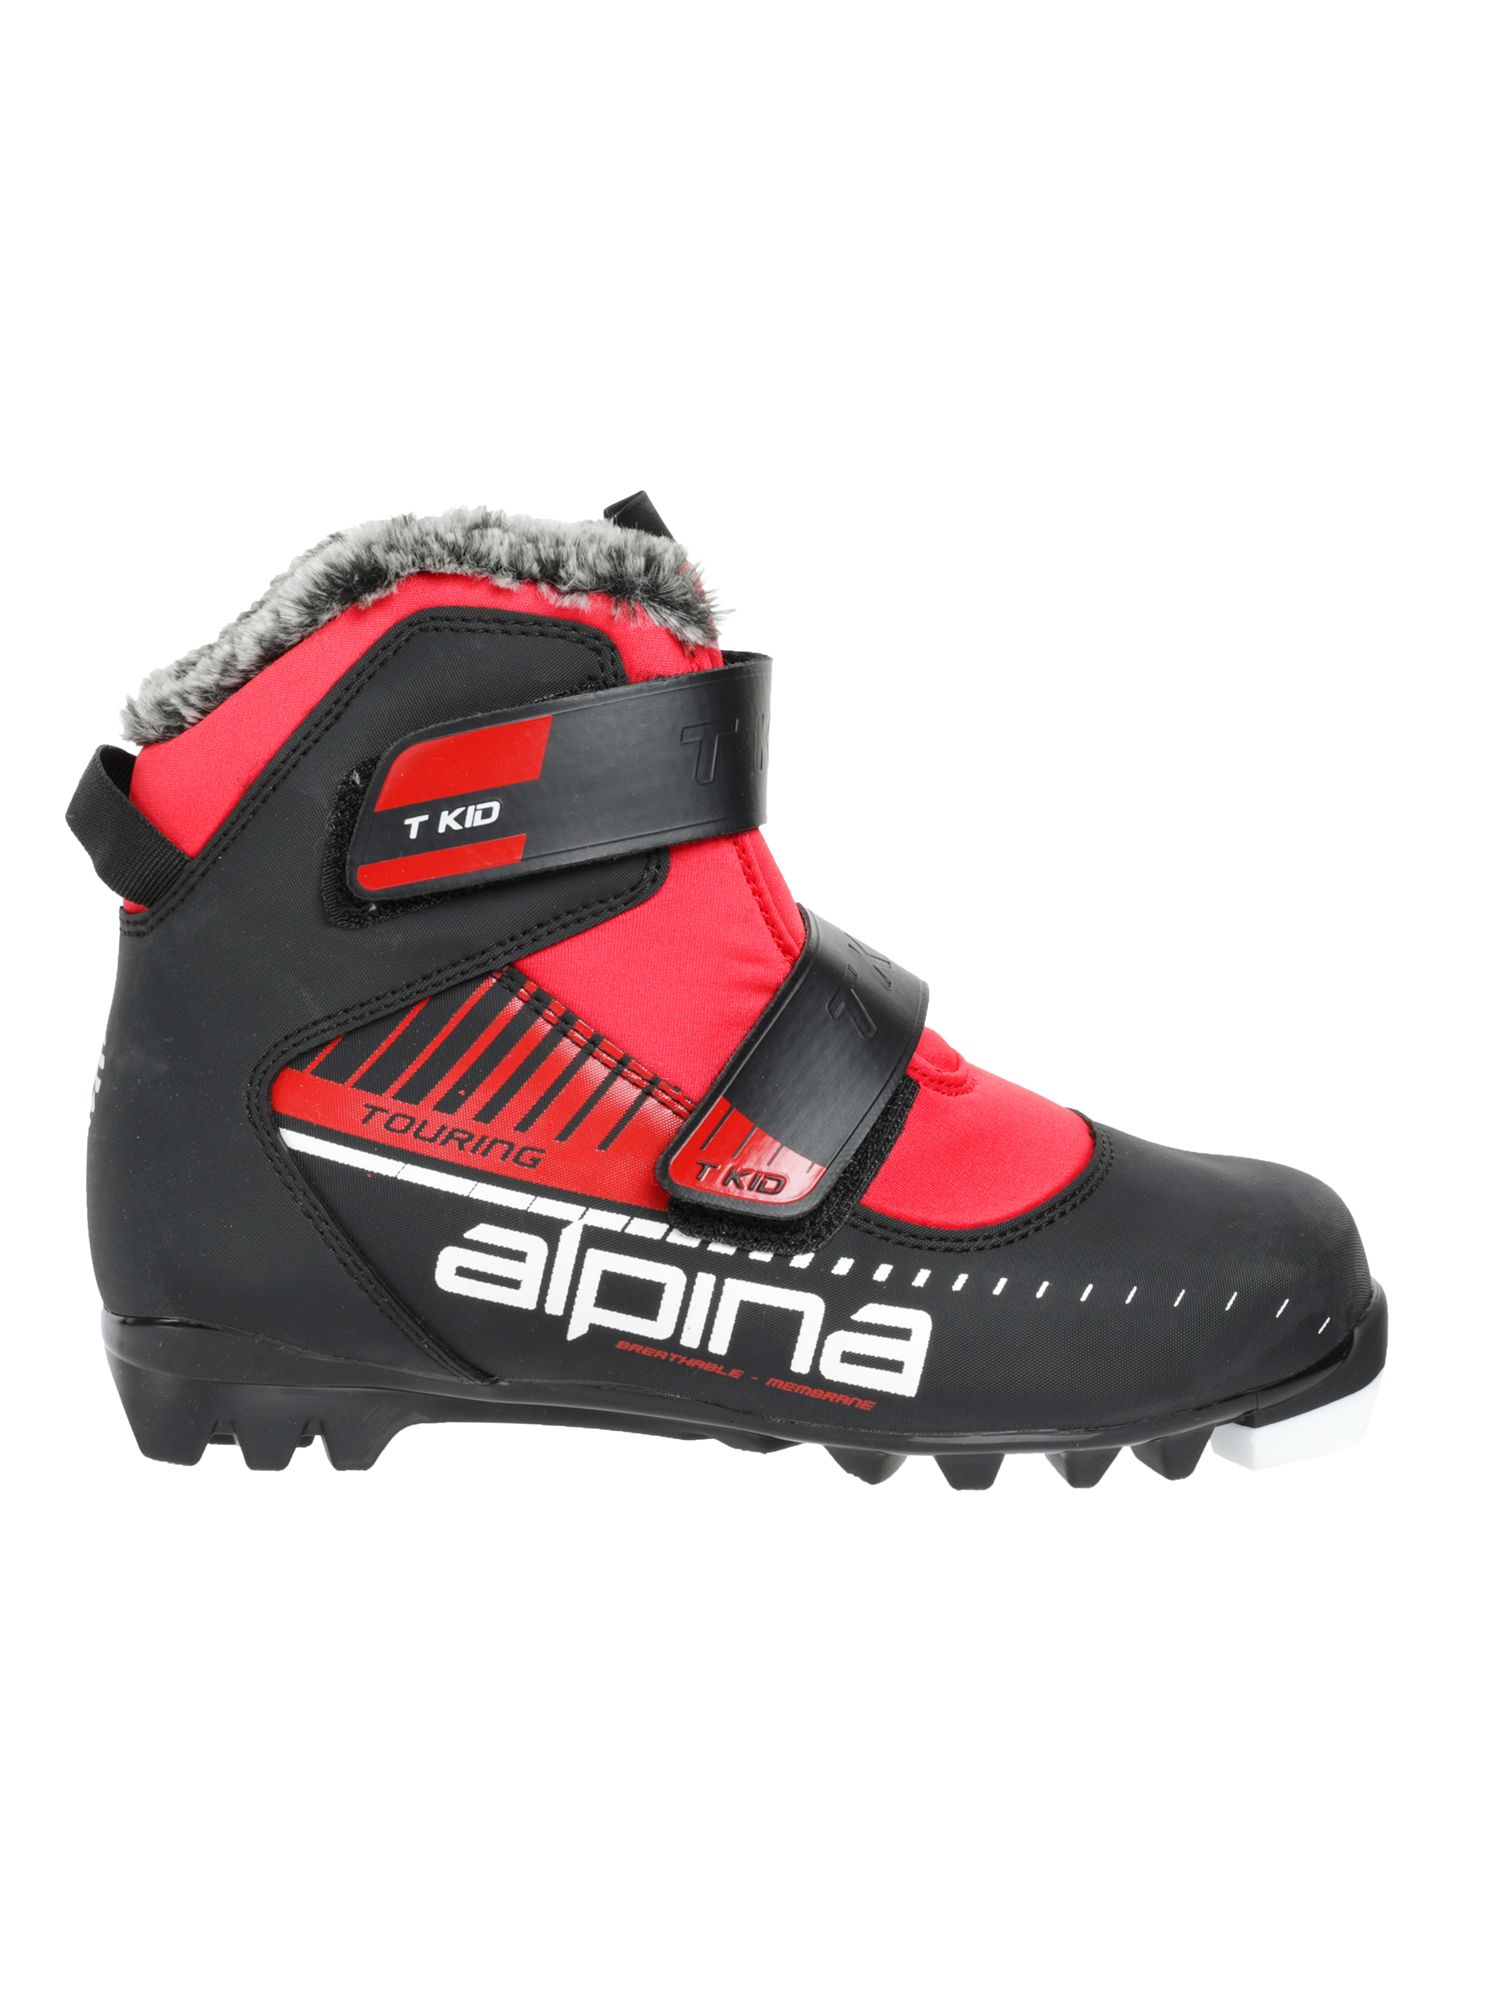 Ботинки Alpina. Лыжные ботинки Alpina детские солнышко. Лыжные Alpina детские.